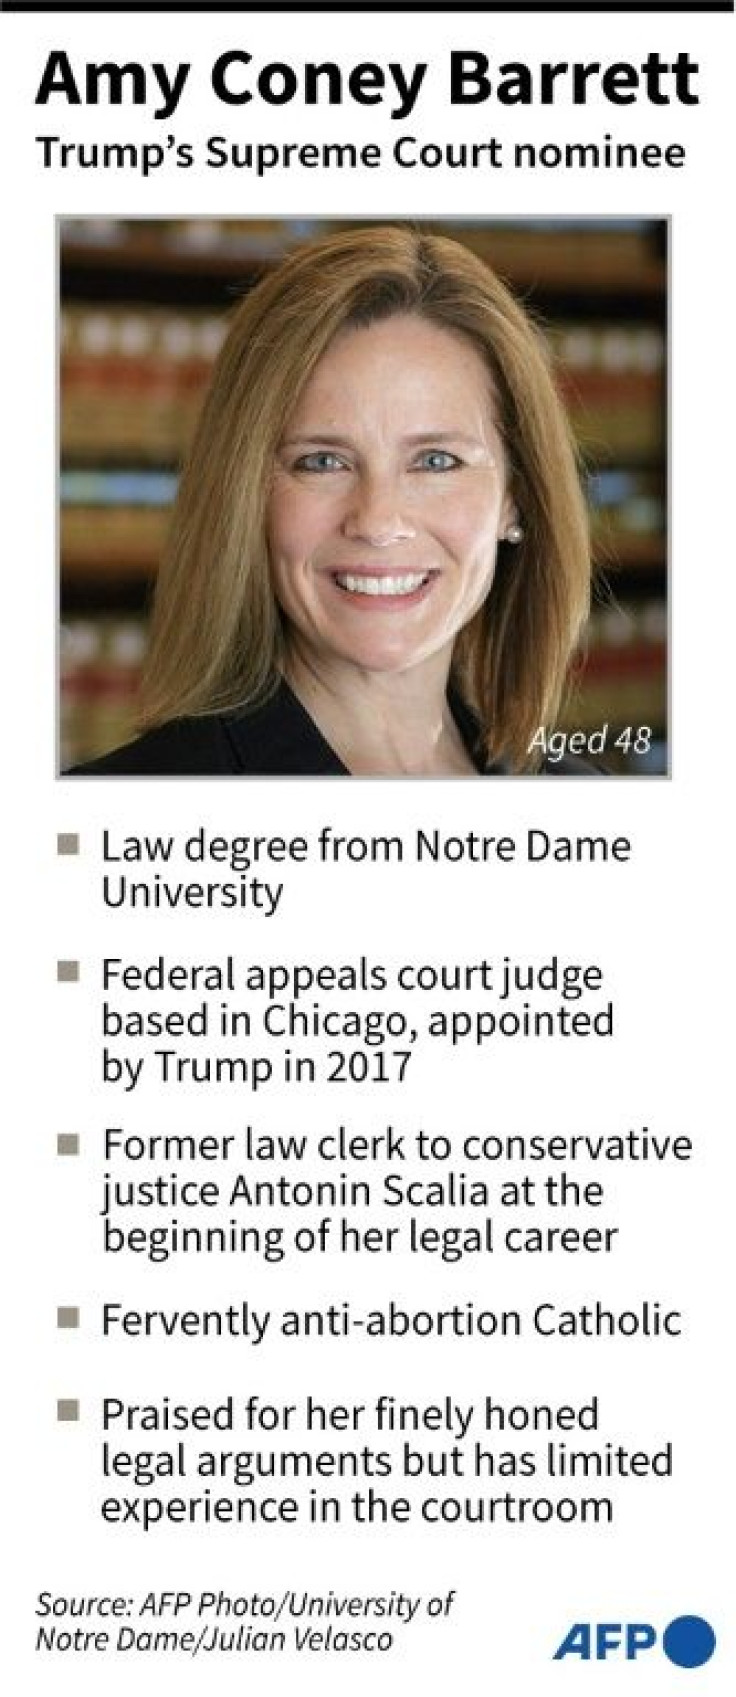 Mini-profile of Amy Coney Barrett, US President Donald Trump's nominee to the Supreme Court.